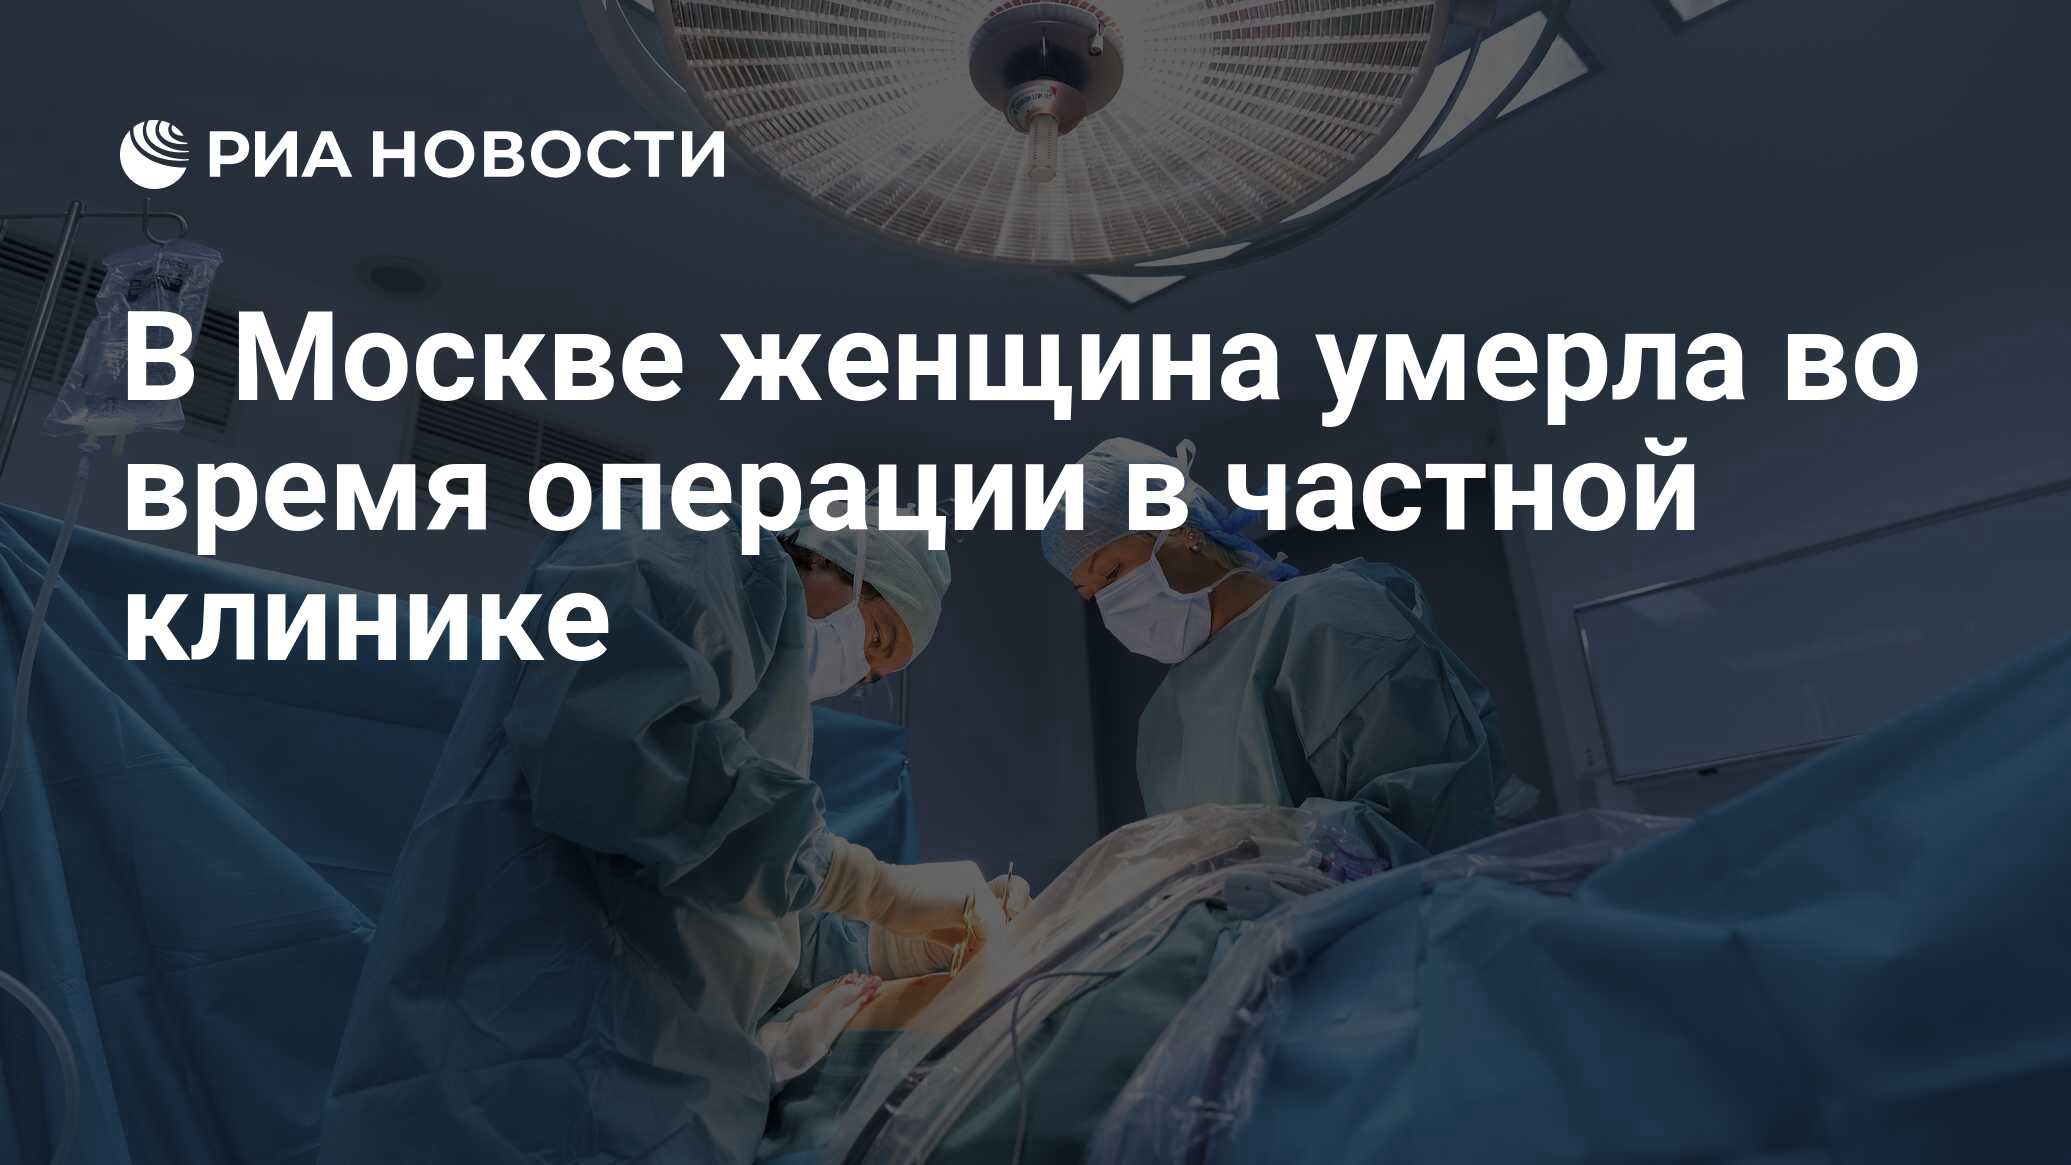 Паразиты съели печень и сердце пациентки Российской больницы. Оперативное время на операцию